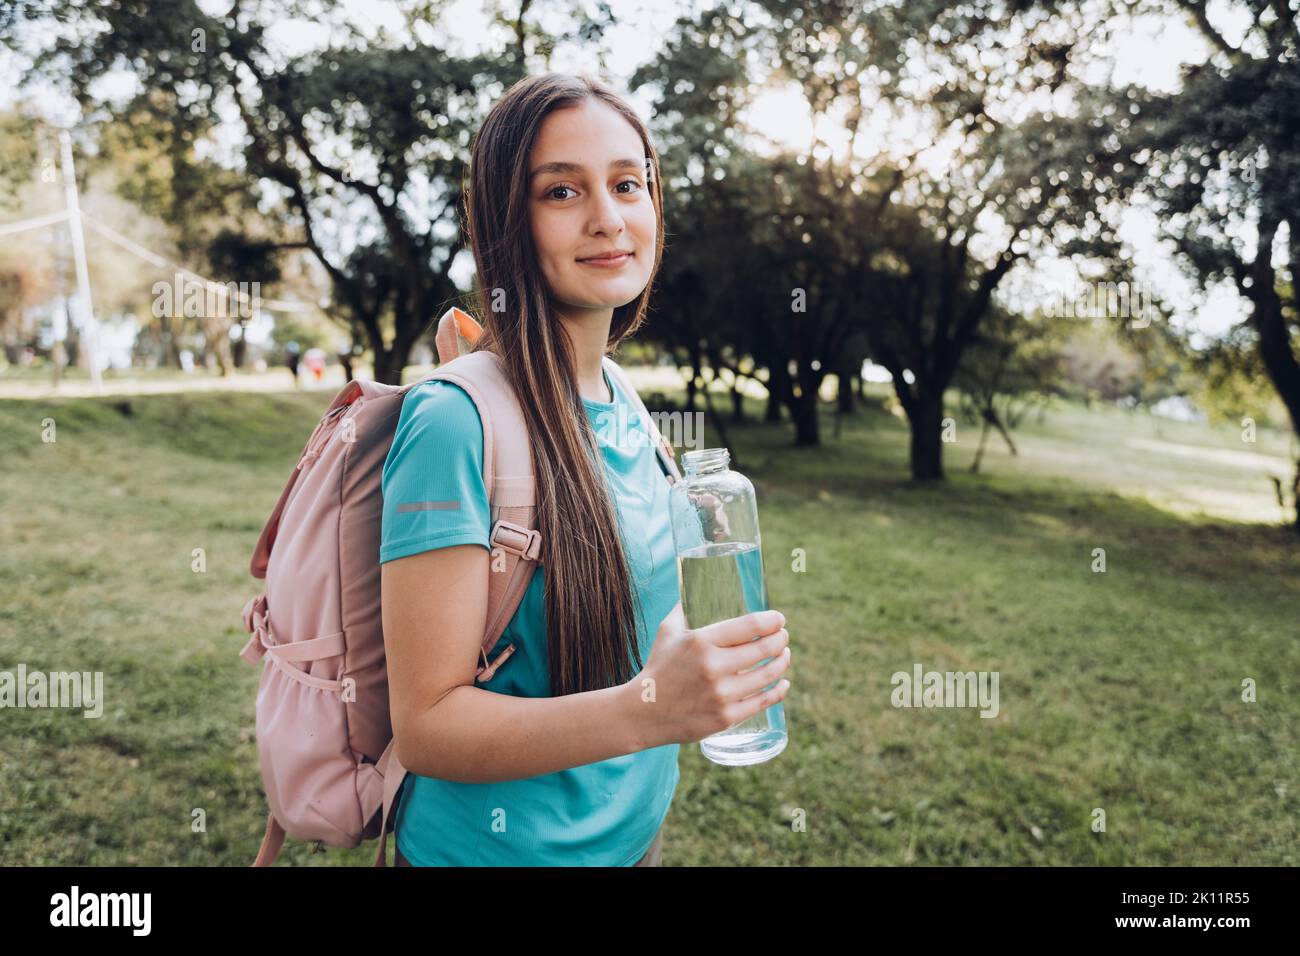 Adolescente portant une chemise turquoise et un sac à dos rose, tenant une bouteille de verre avec de l'eau dans la nature Banque D'Images